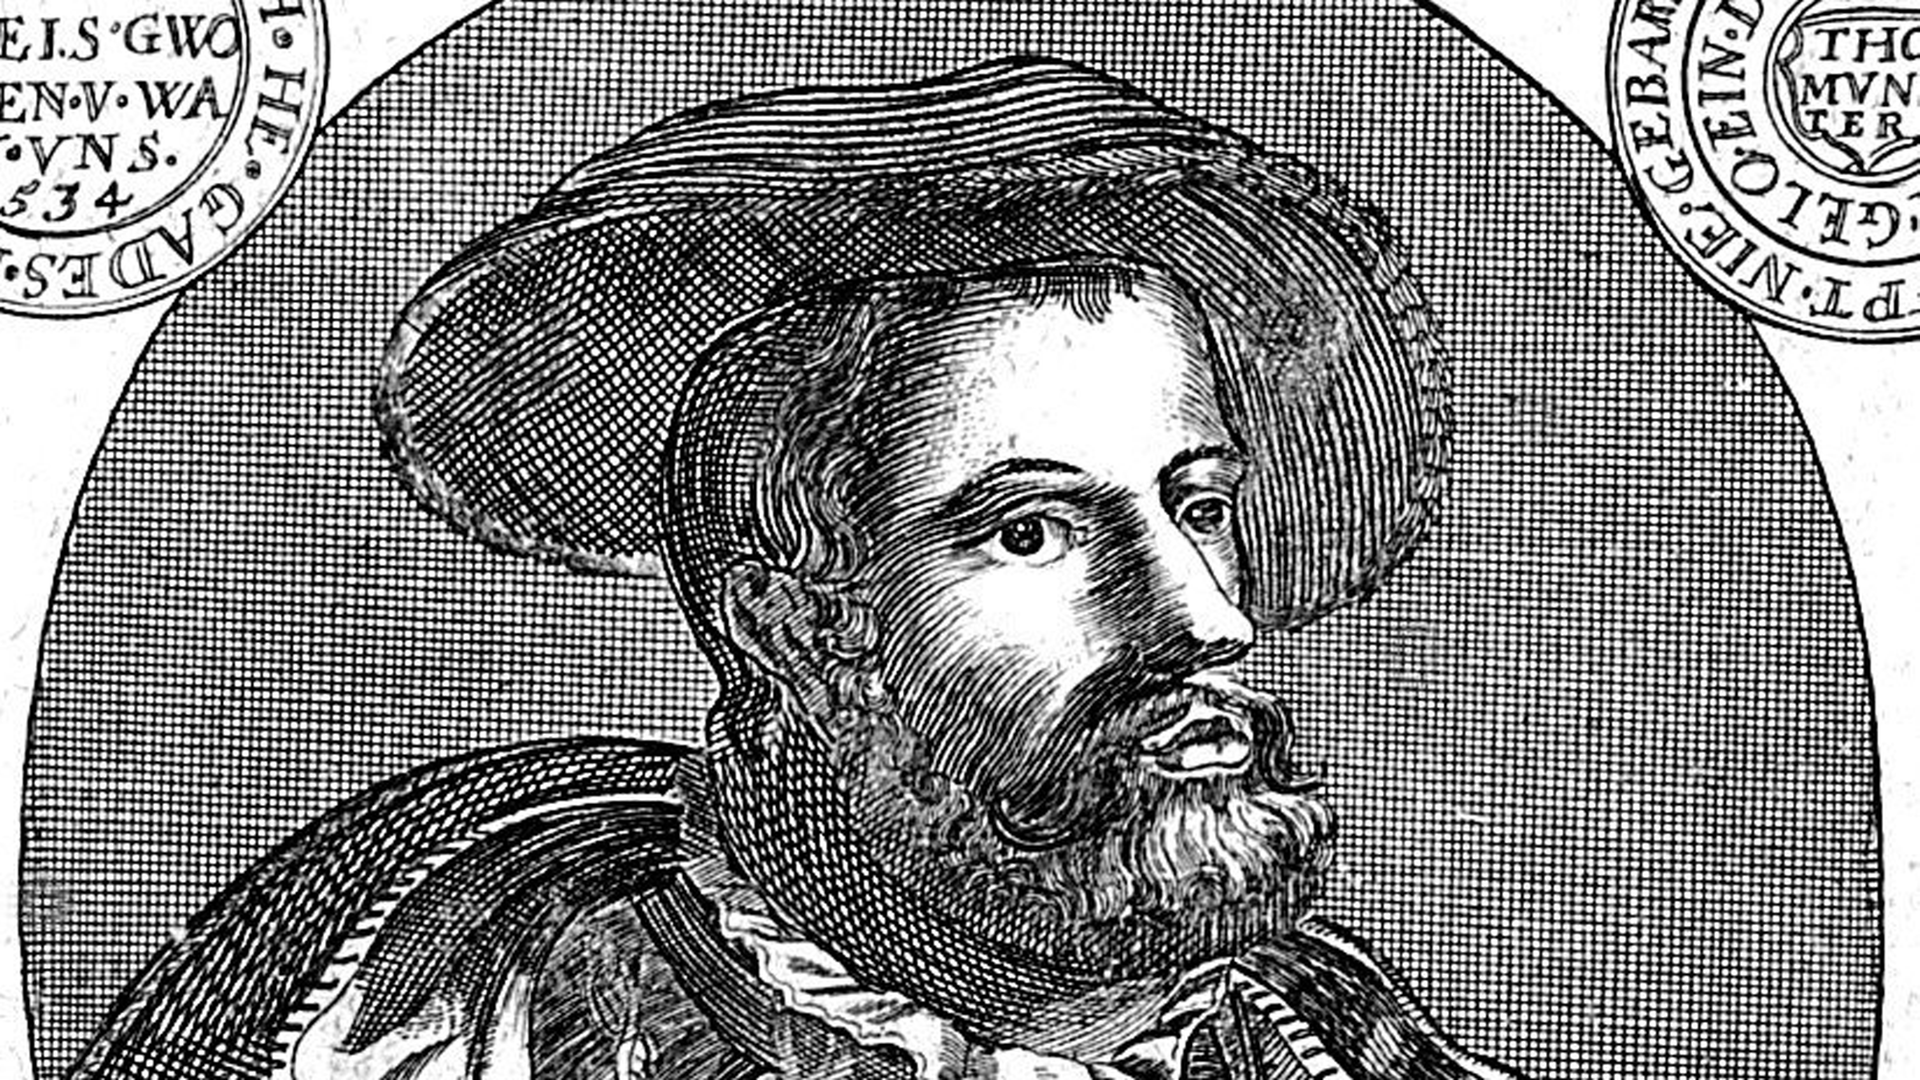 Zeitgenössisches Porträt des niederländischen Täufers und Schwärmers Johann Bockelson (1509-1536).